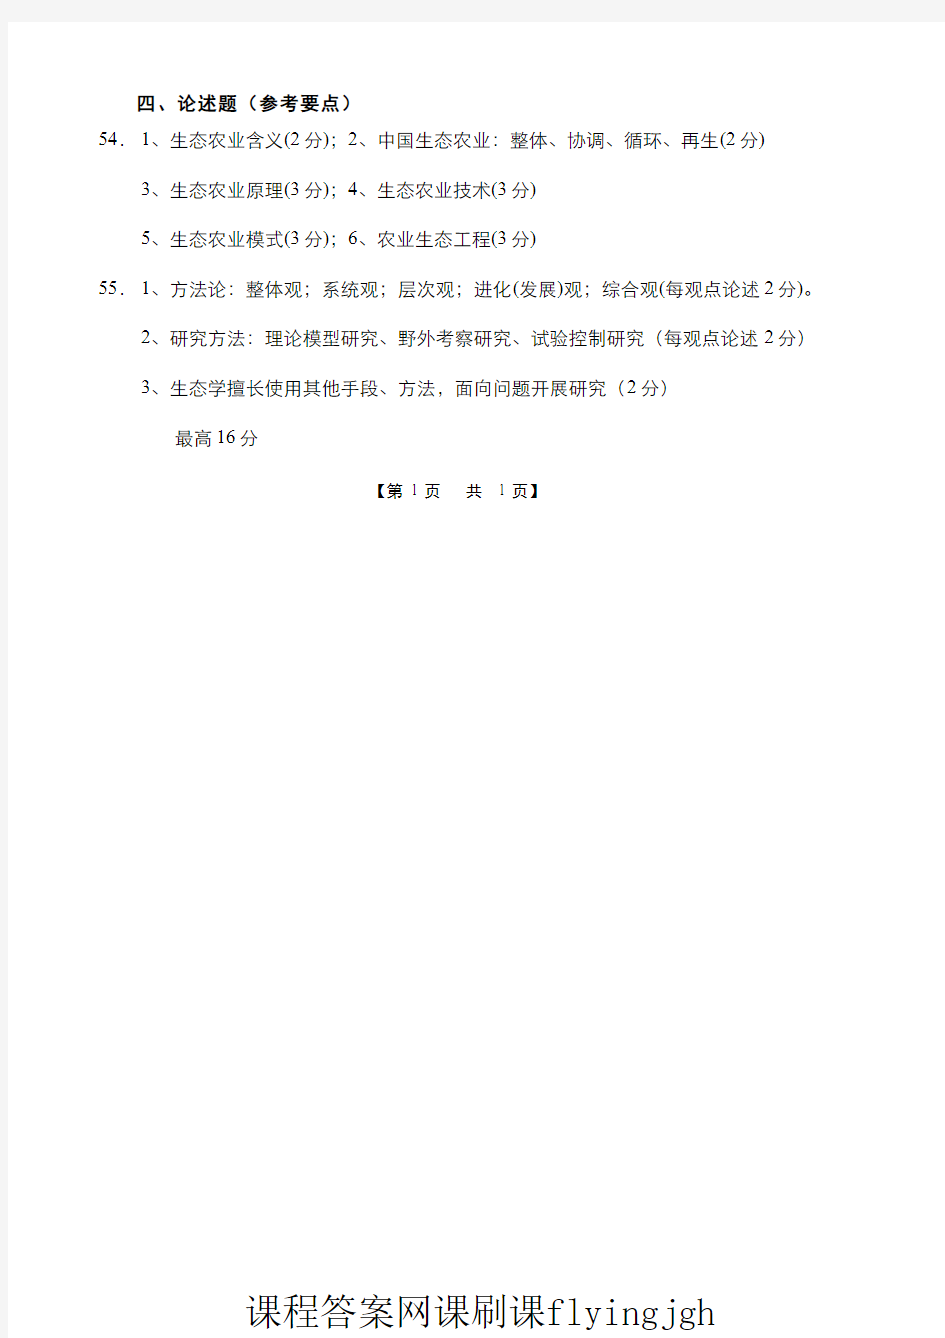 中国大学MOOC慕课爱课程(6)--农业生态学课程期末考试A(答案题解)网课刷课